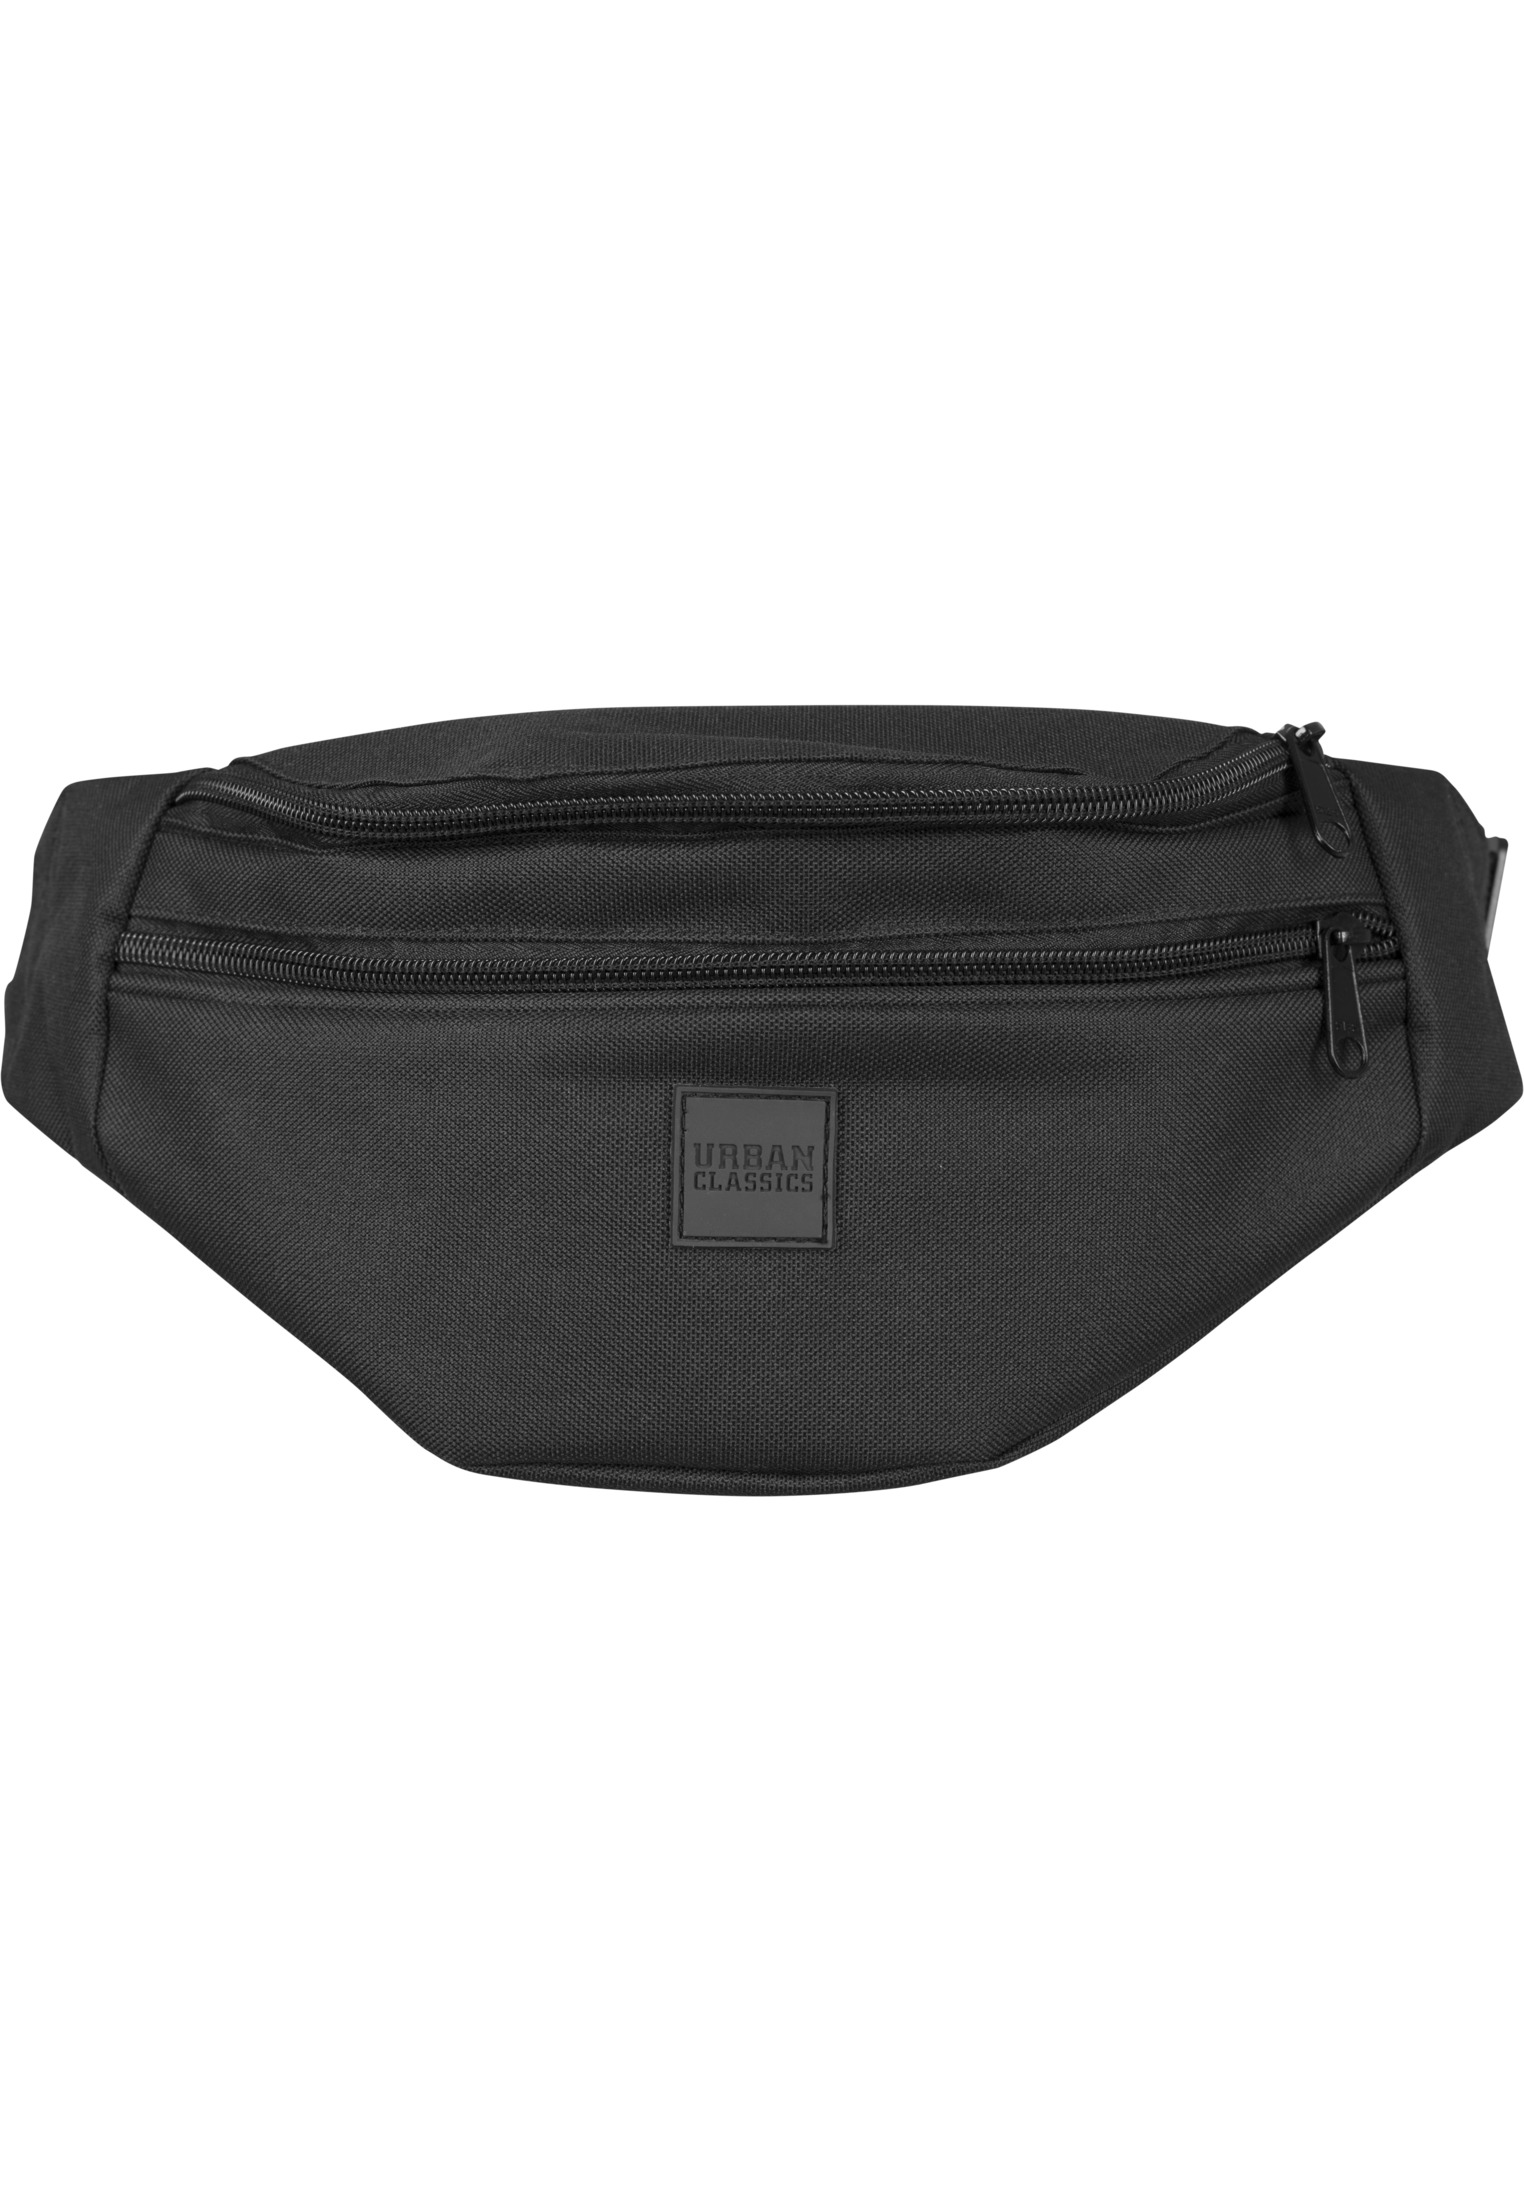 Taschen Double-Zip Shoulder Bag in Farbe blk/blk